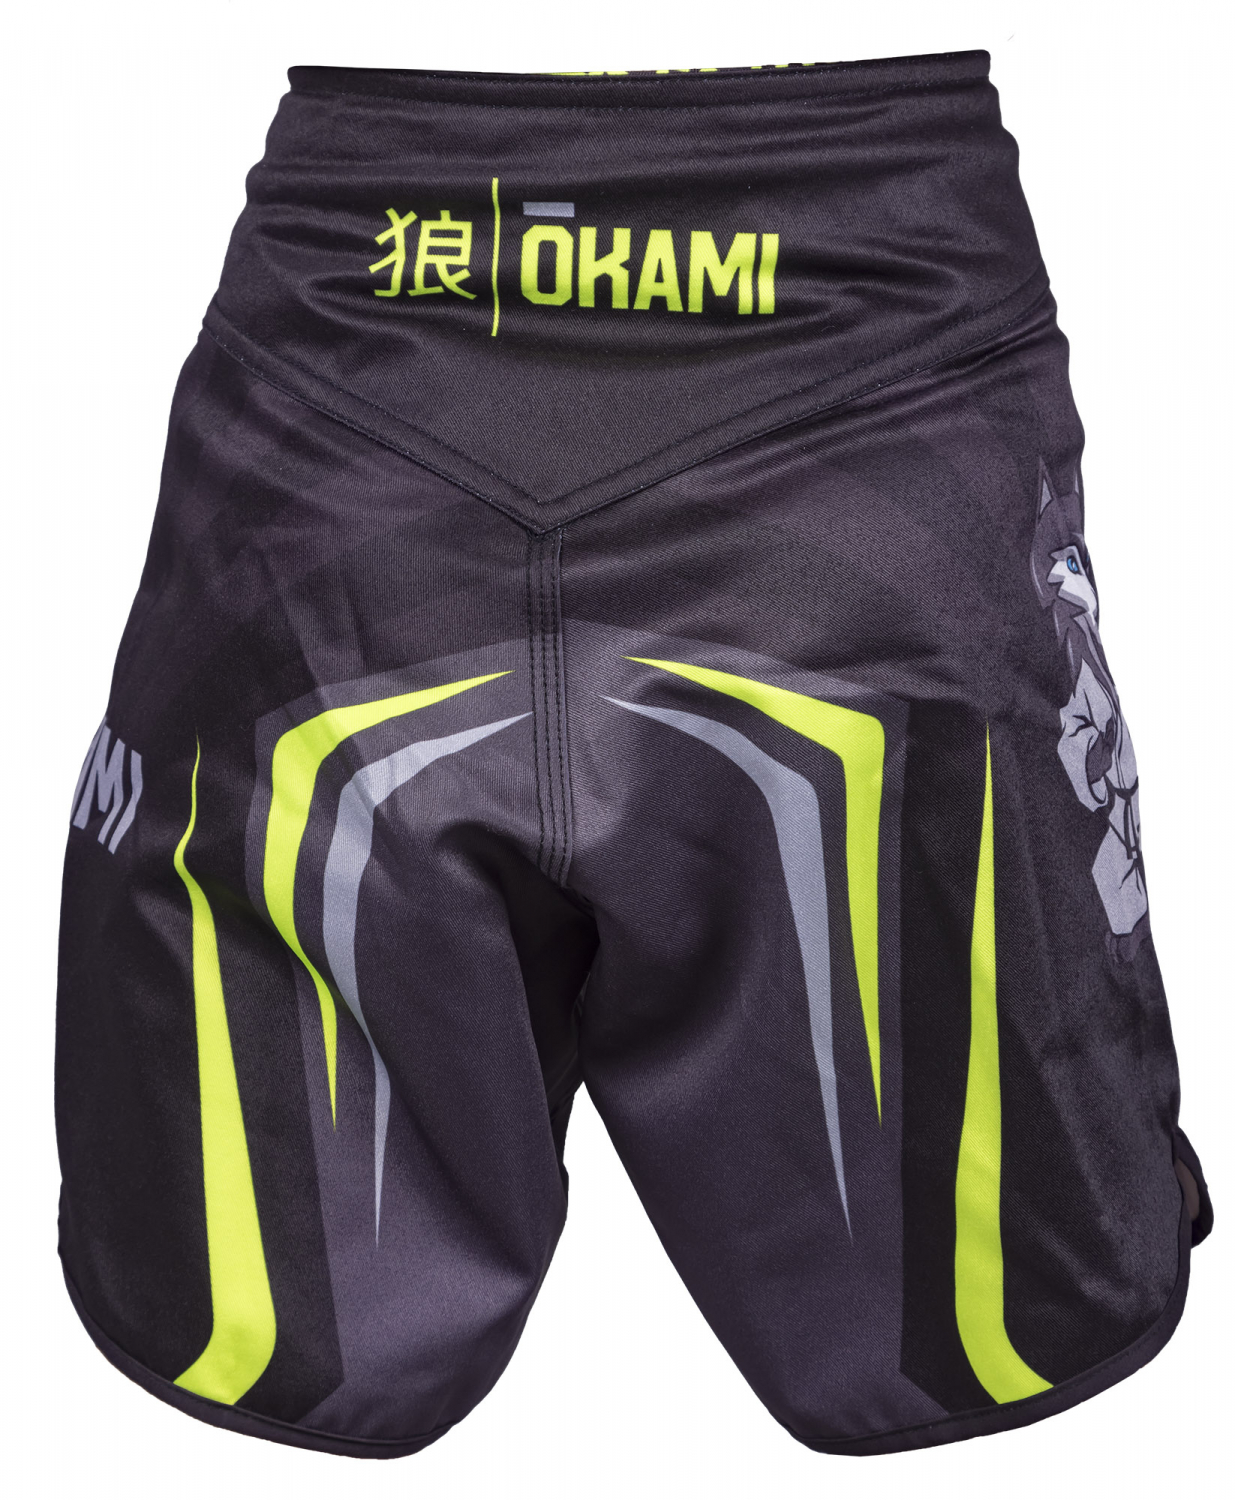 OKAMI Kids Fight Shorts Chikami